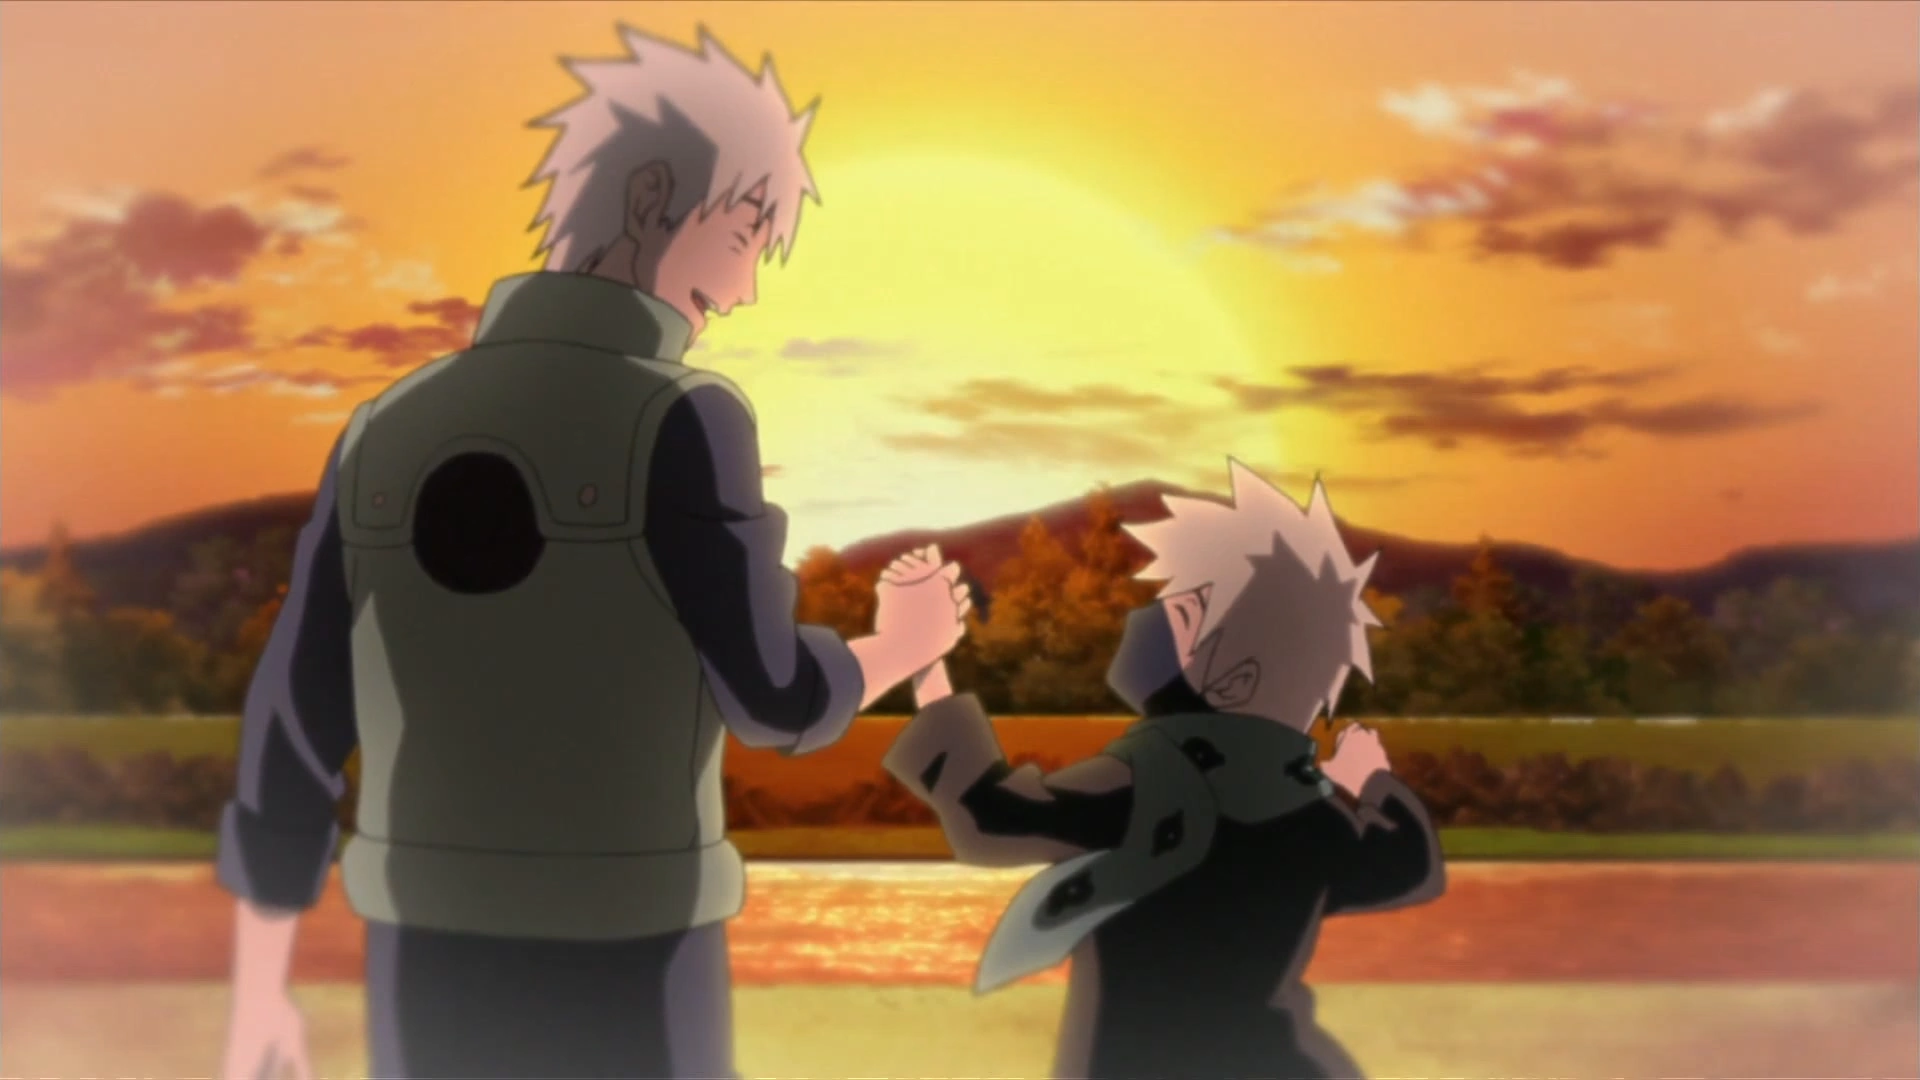 Minato conhece Kakashi após a morte de Sakumo Hatake - Naruto Shippuden 